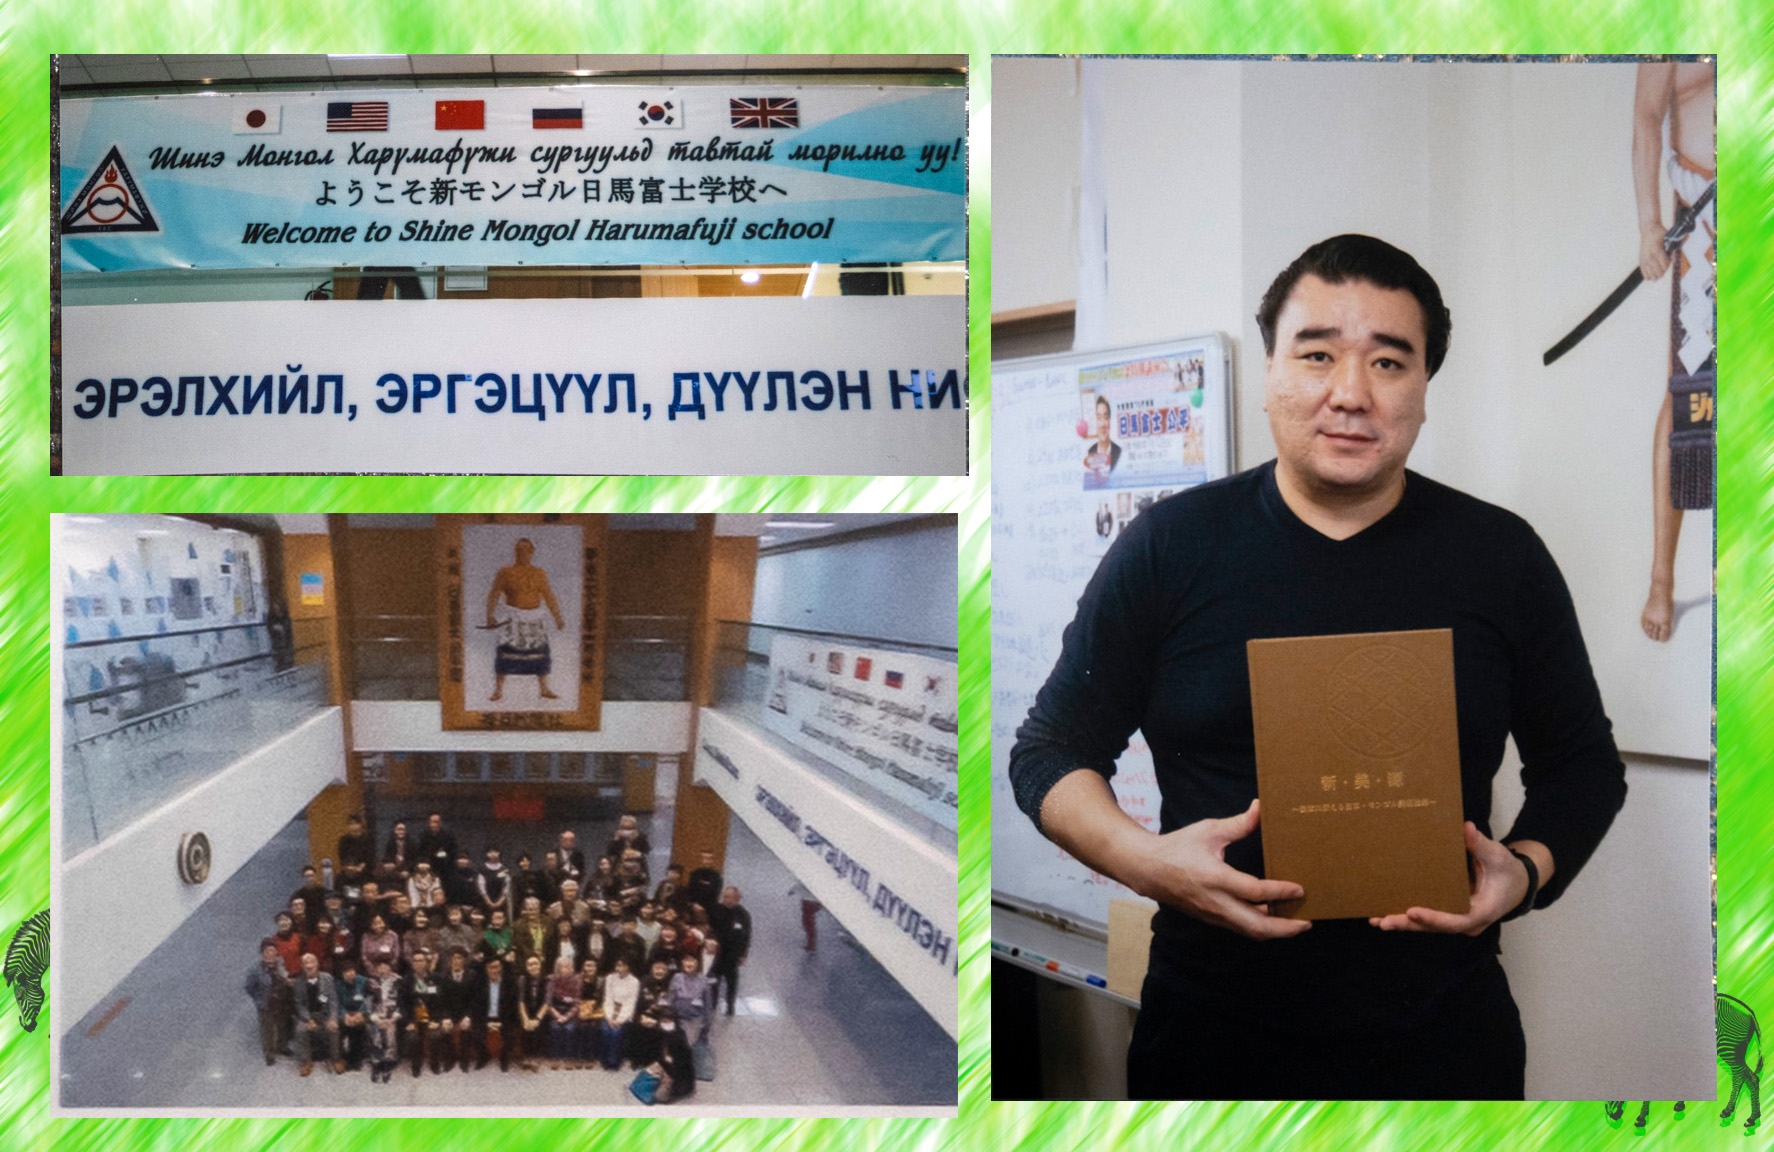 国際総合芸術交流協会日本モンゴル国際教育文化芸術祭